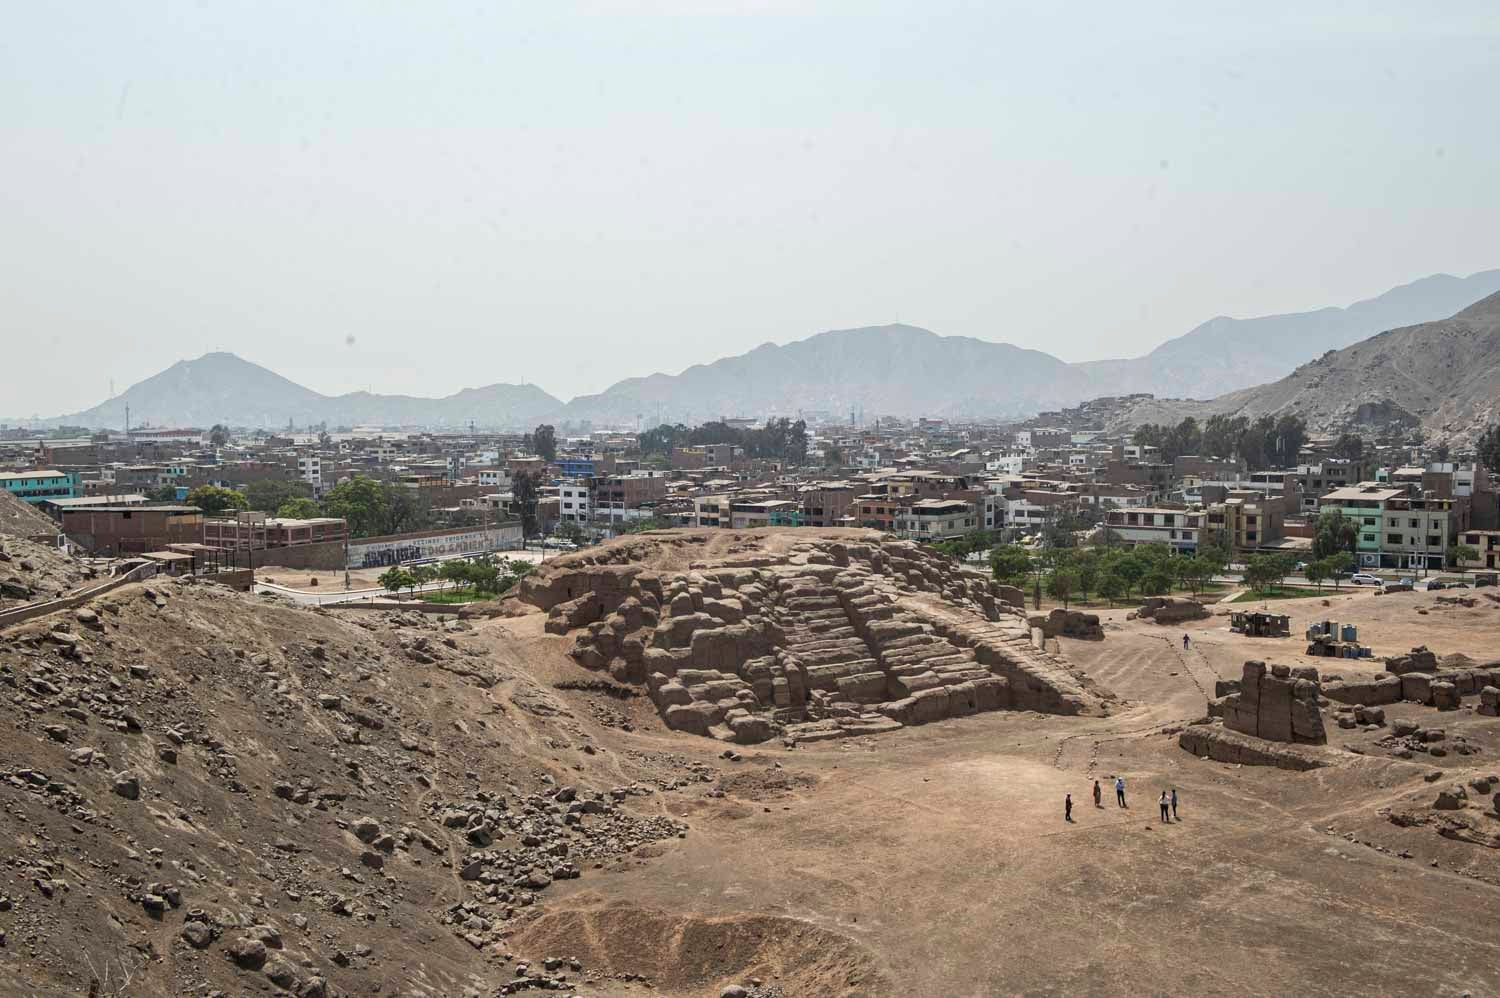 El año pasado, se encontró otra momia de 600 años en el yacimiento arqueológico de Mangomarca, al este de Lima